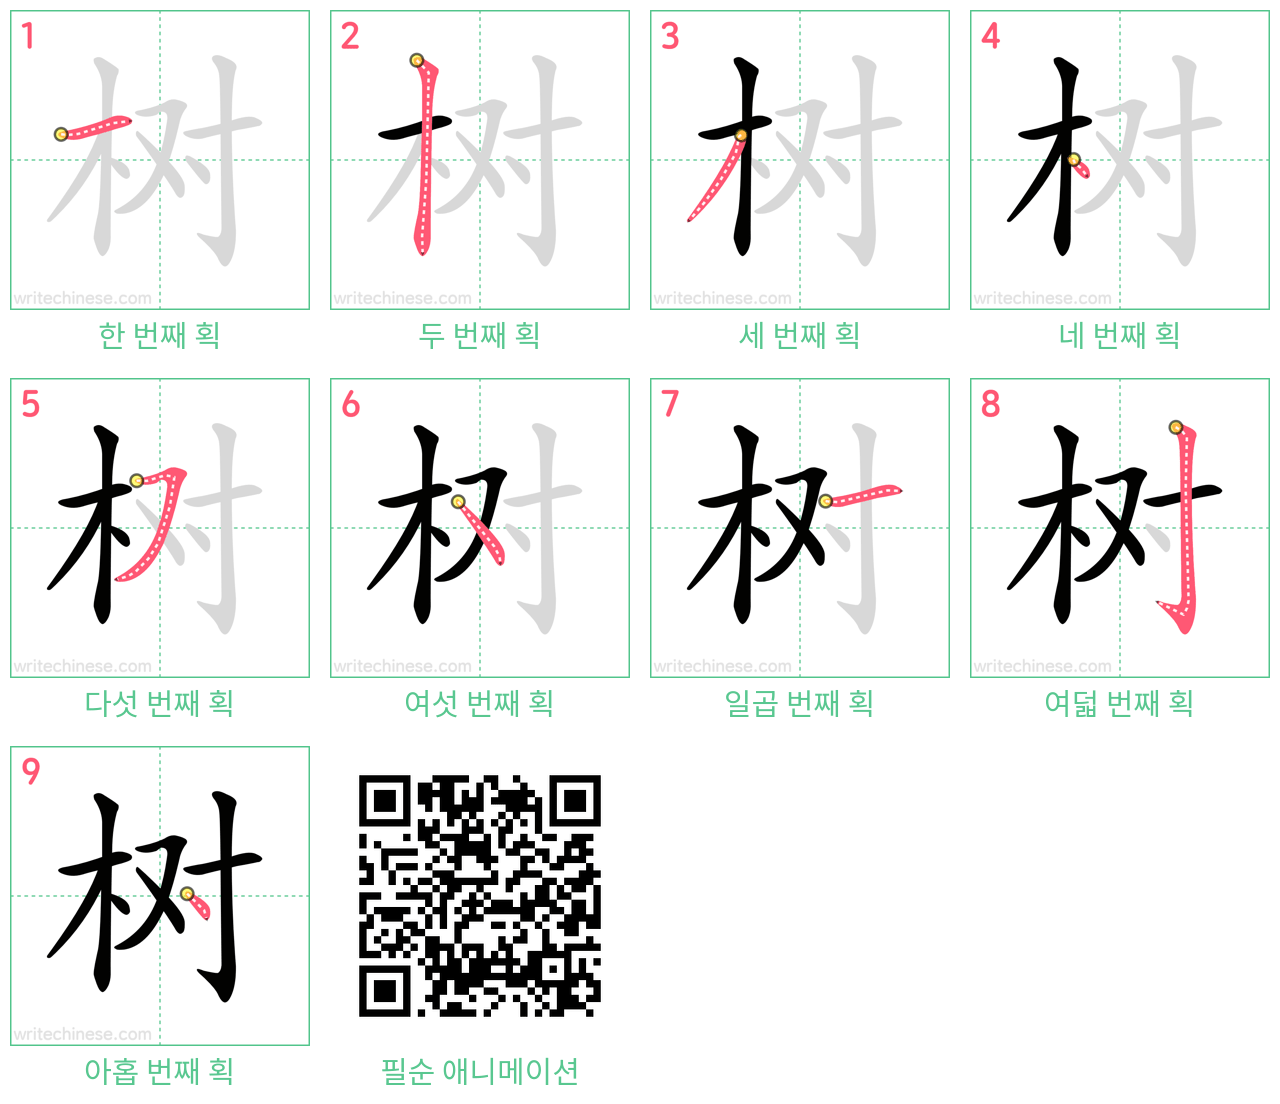 树 step-by-step stroke order diagrams